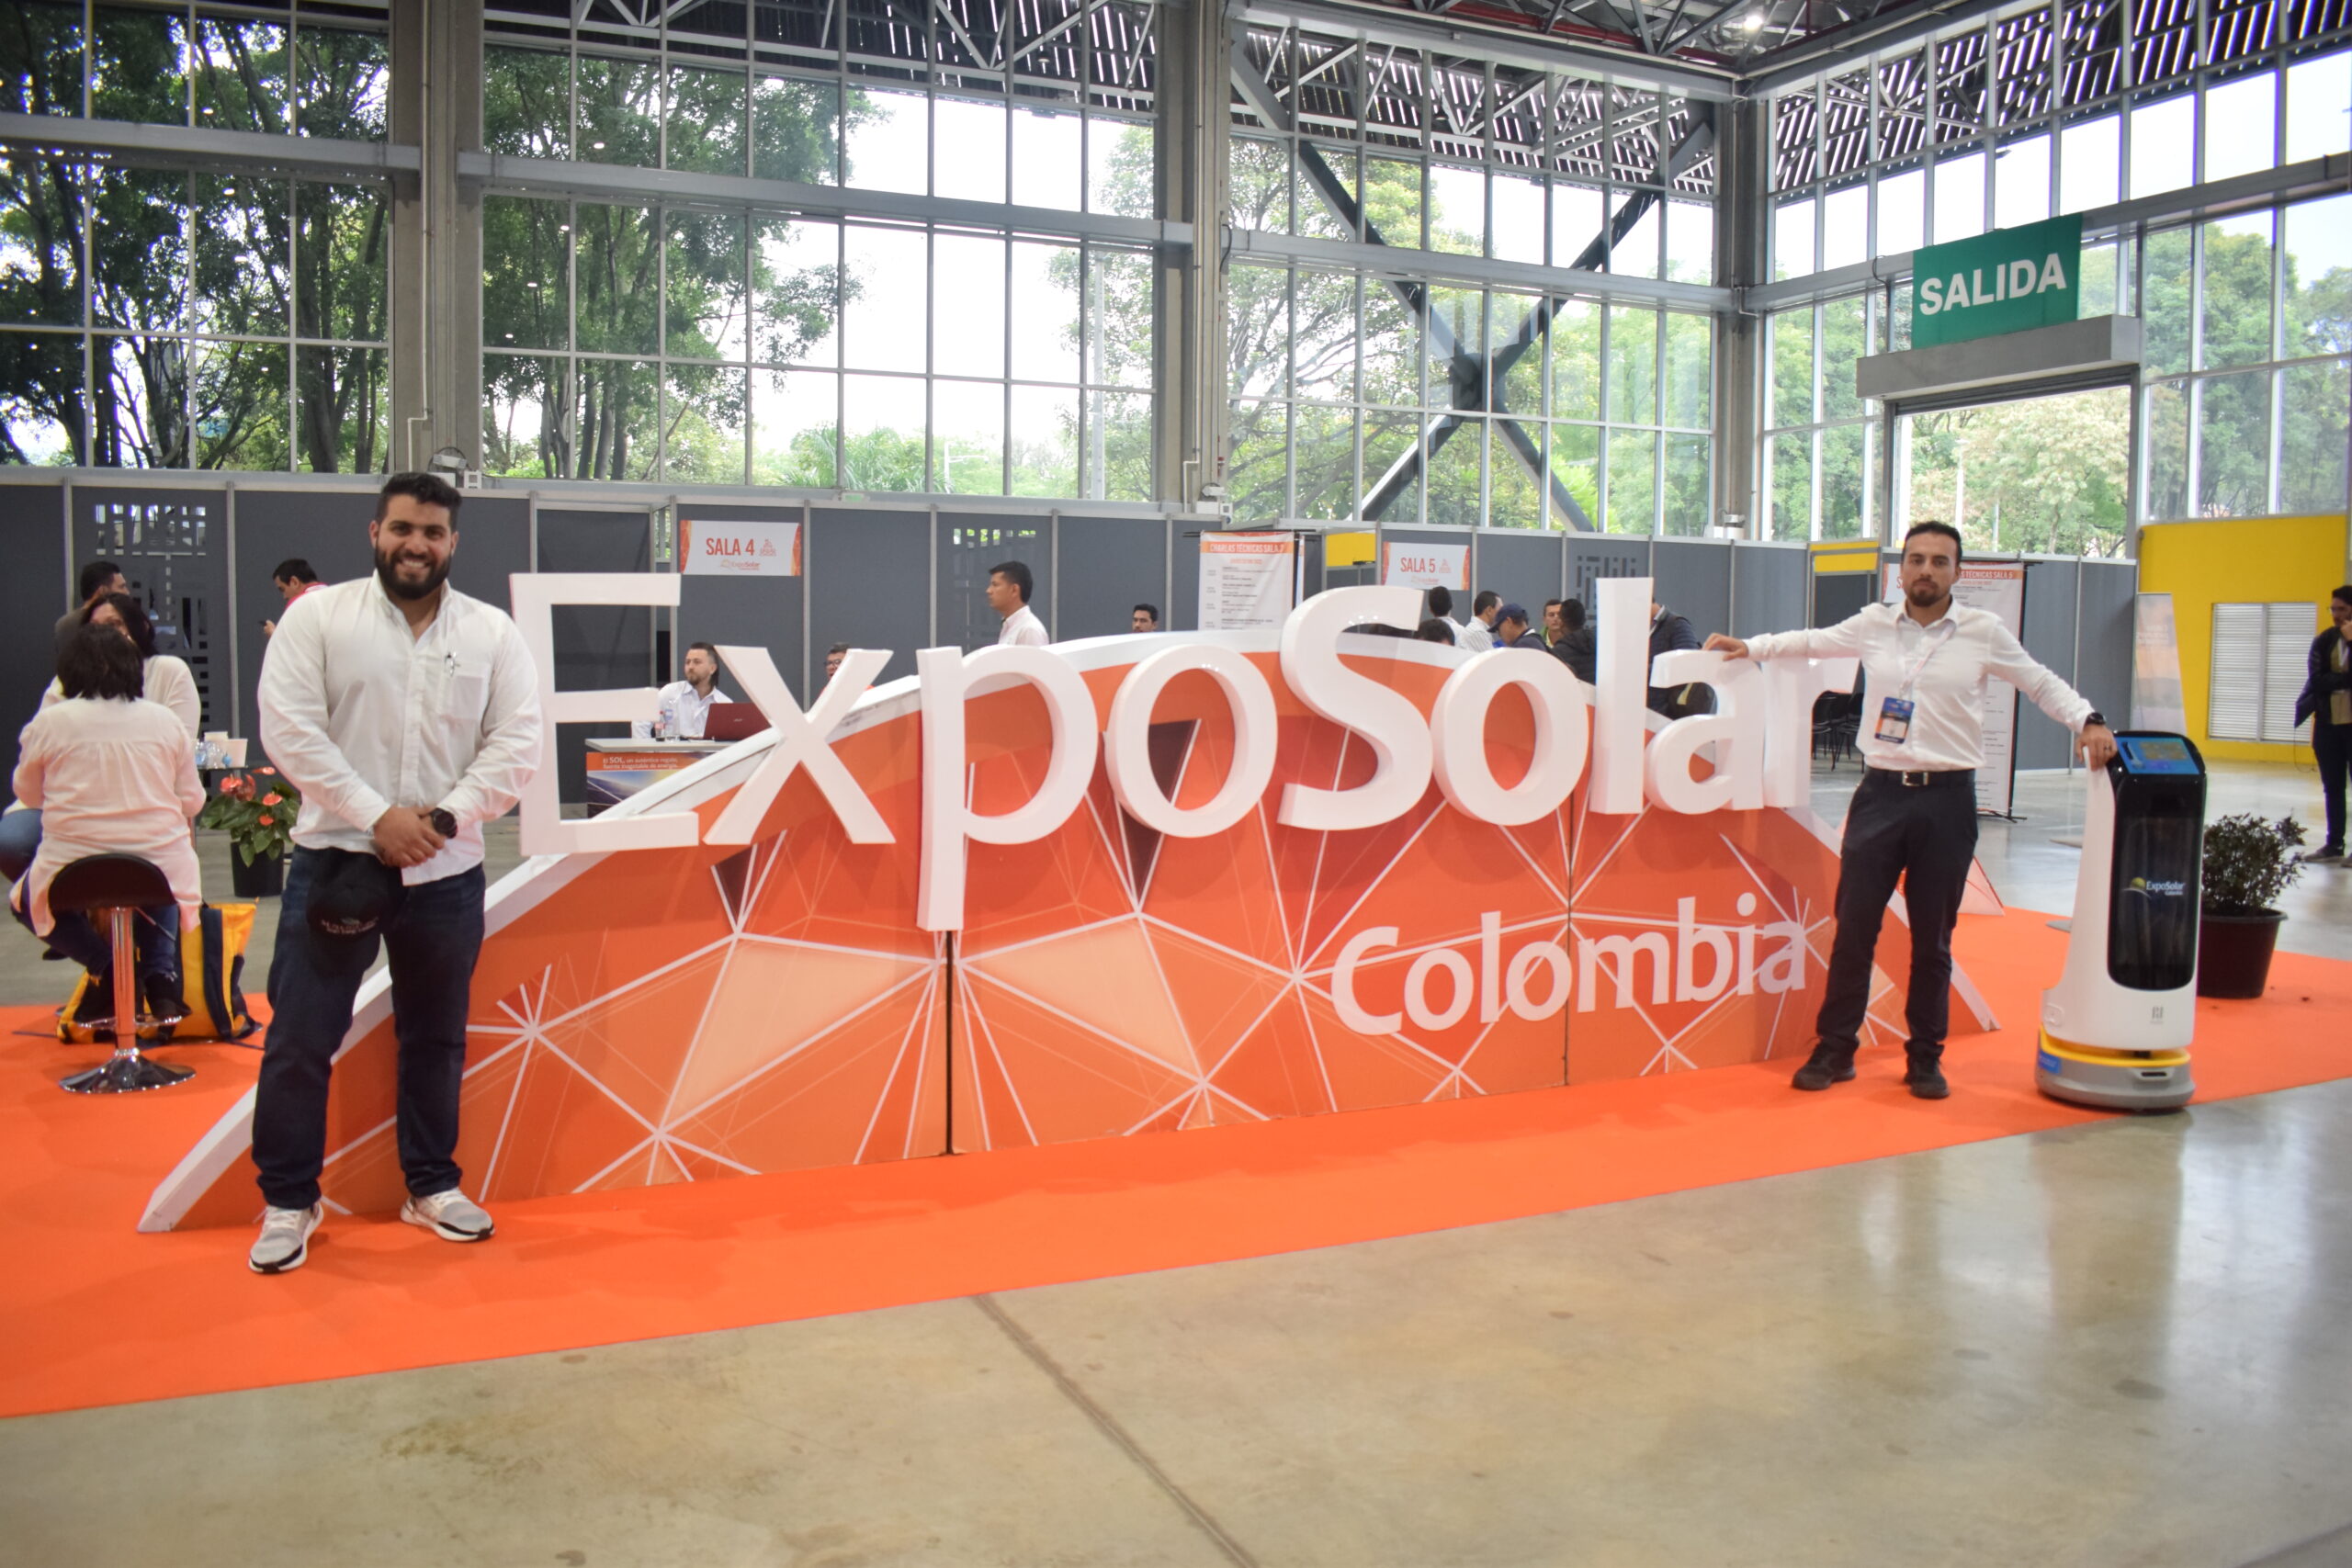 ExpoSolar Colombia 2023